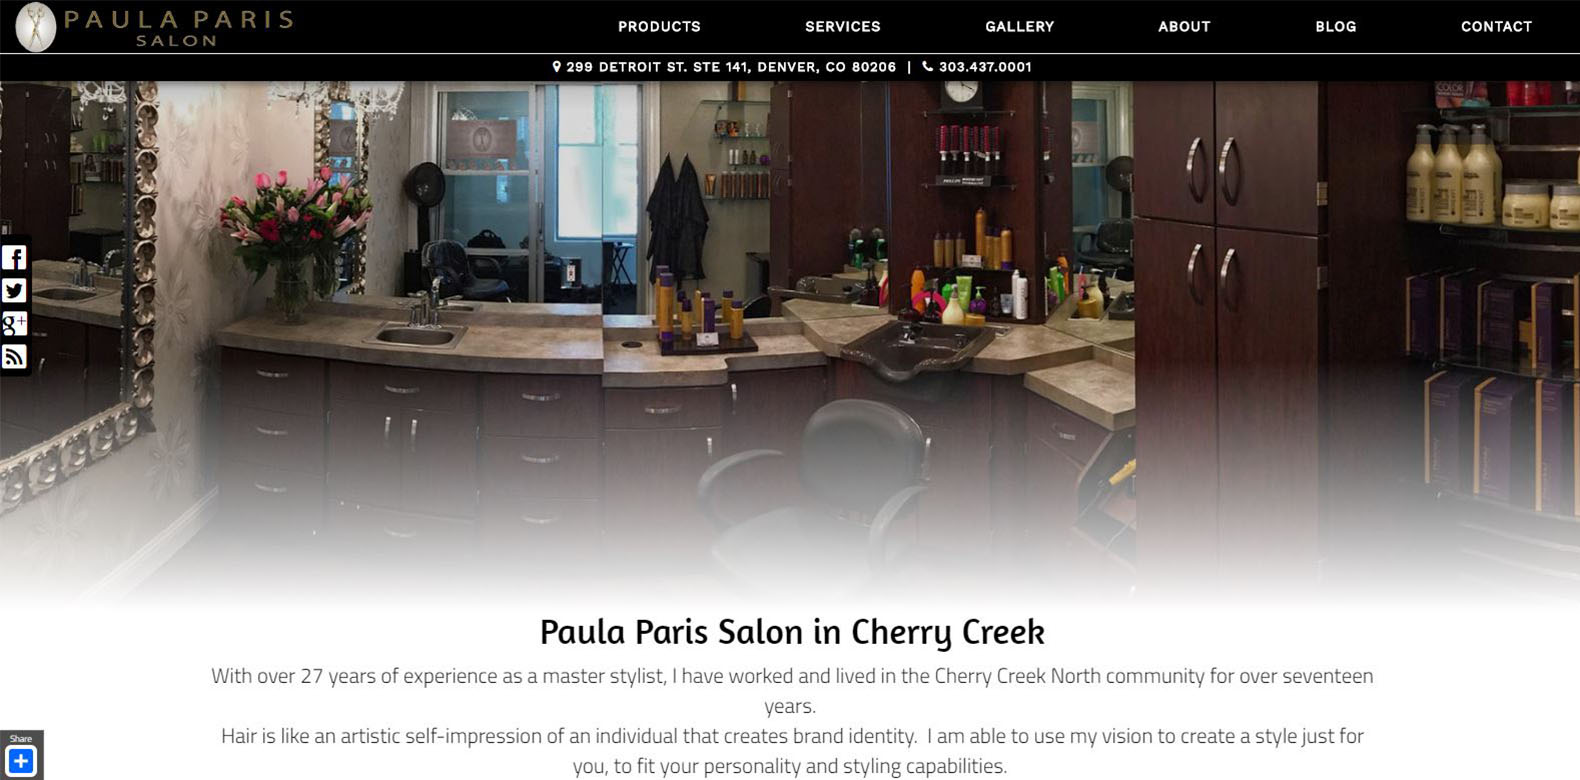 
New Website Launched: Paula Paris Salon